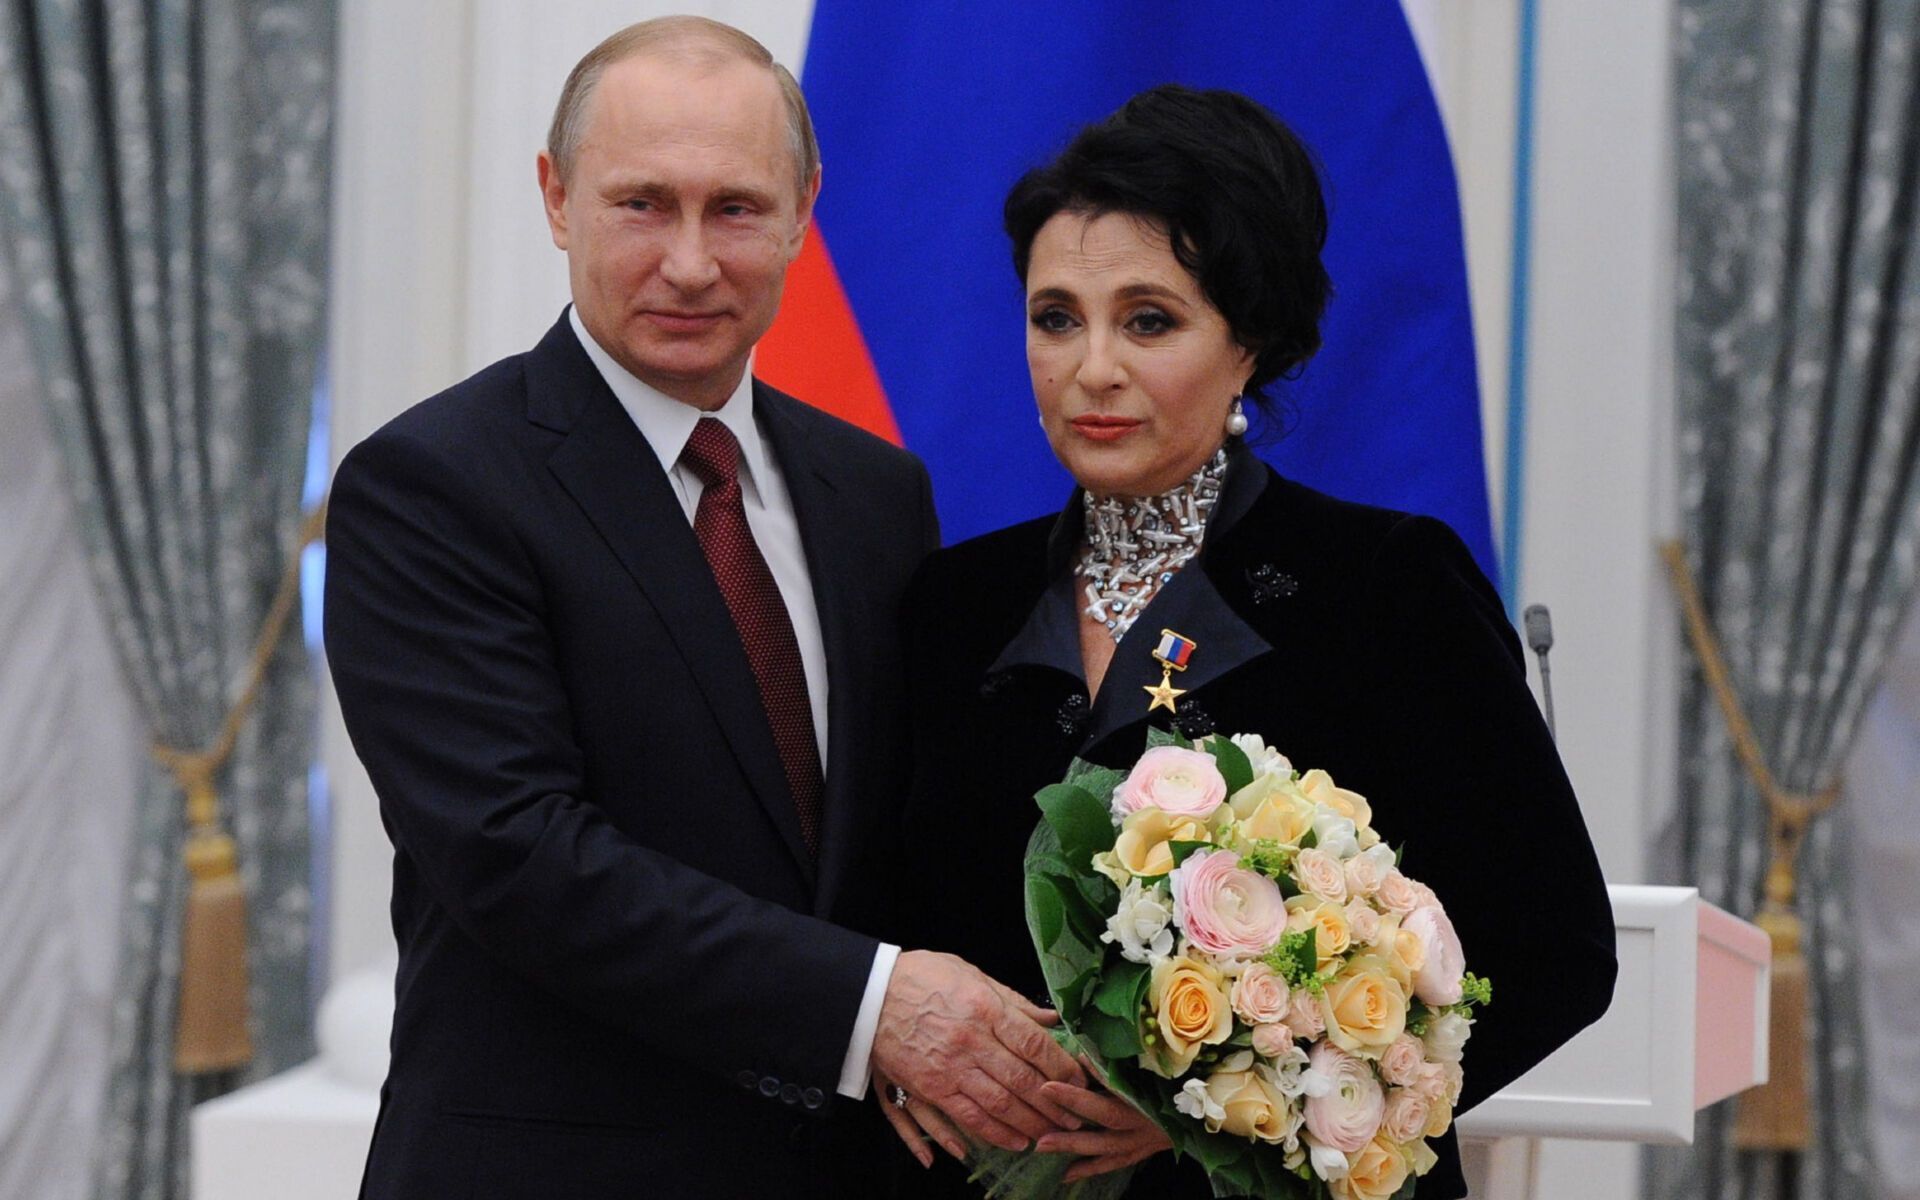 Putin and Viner